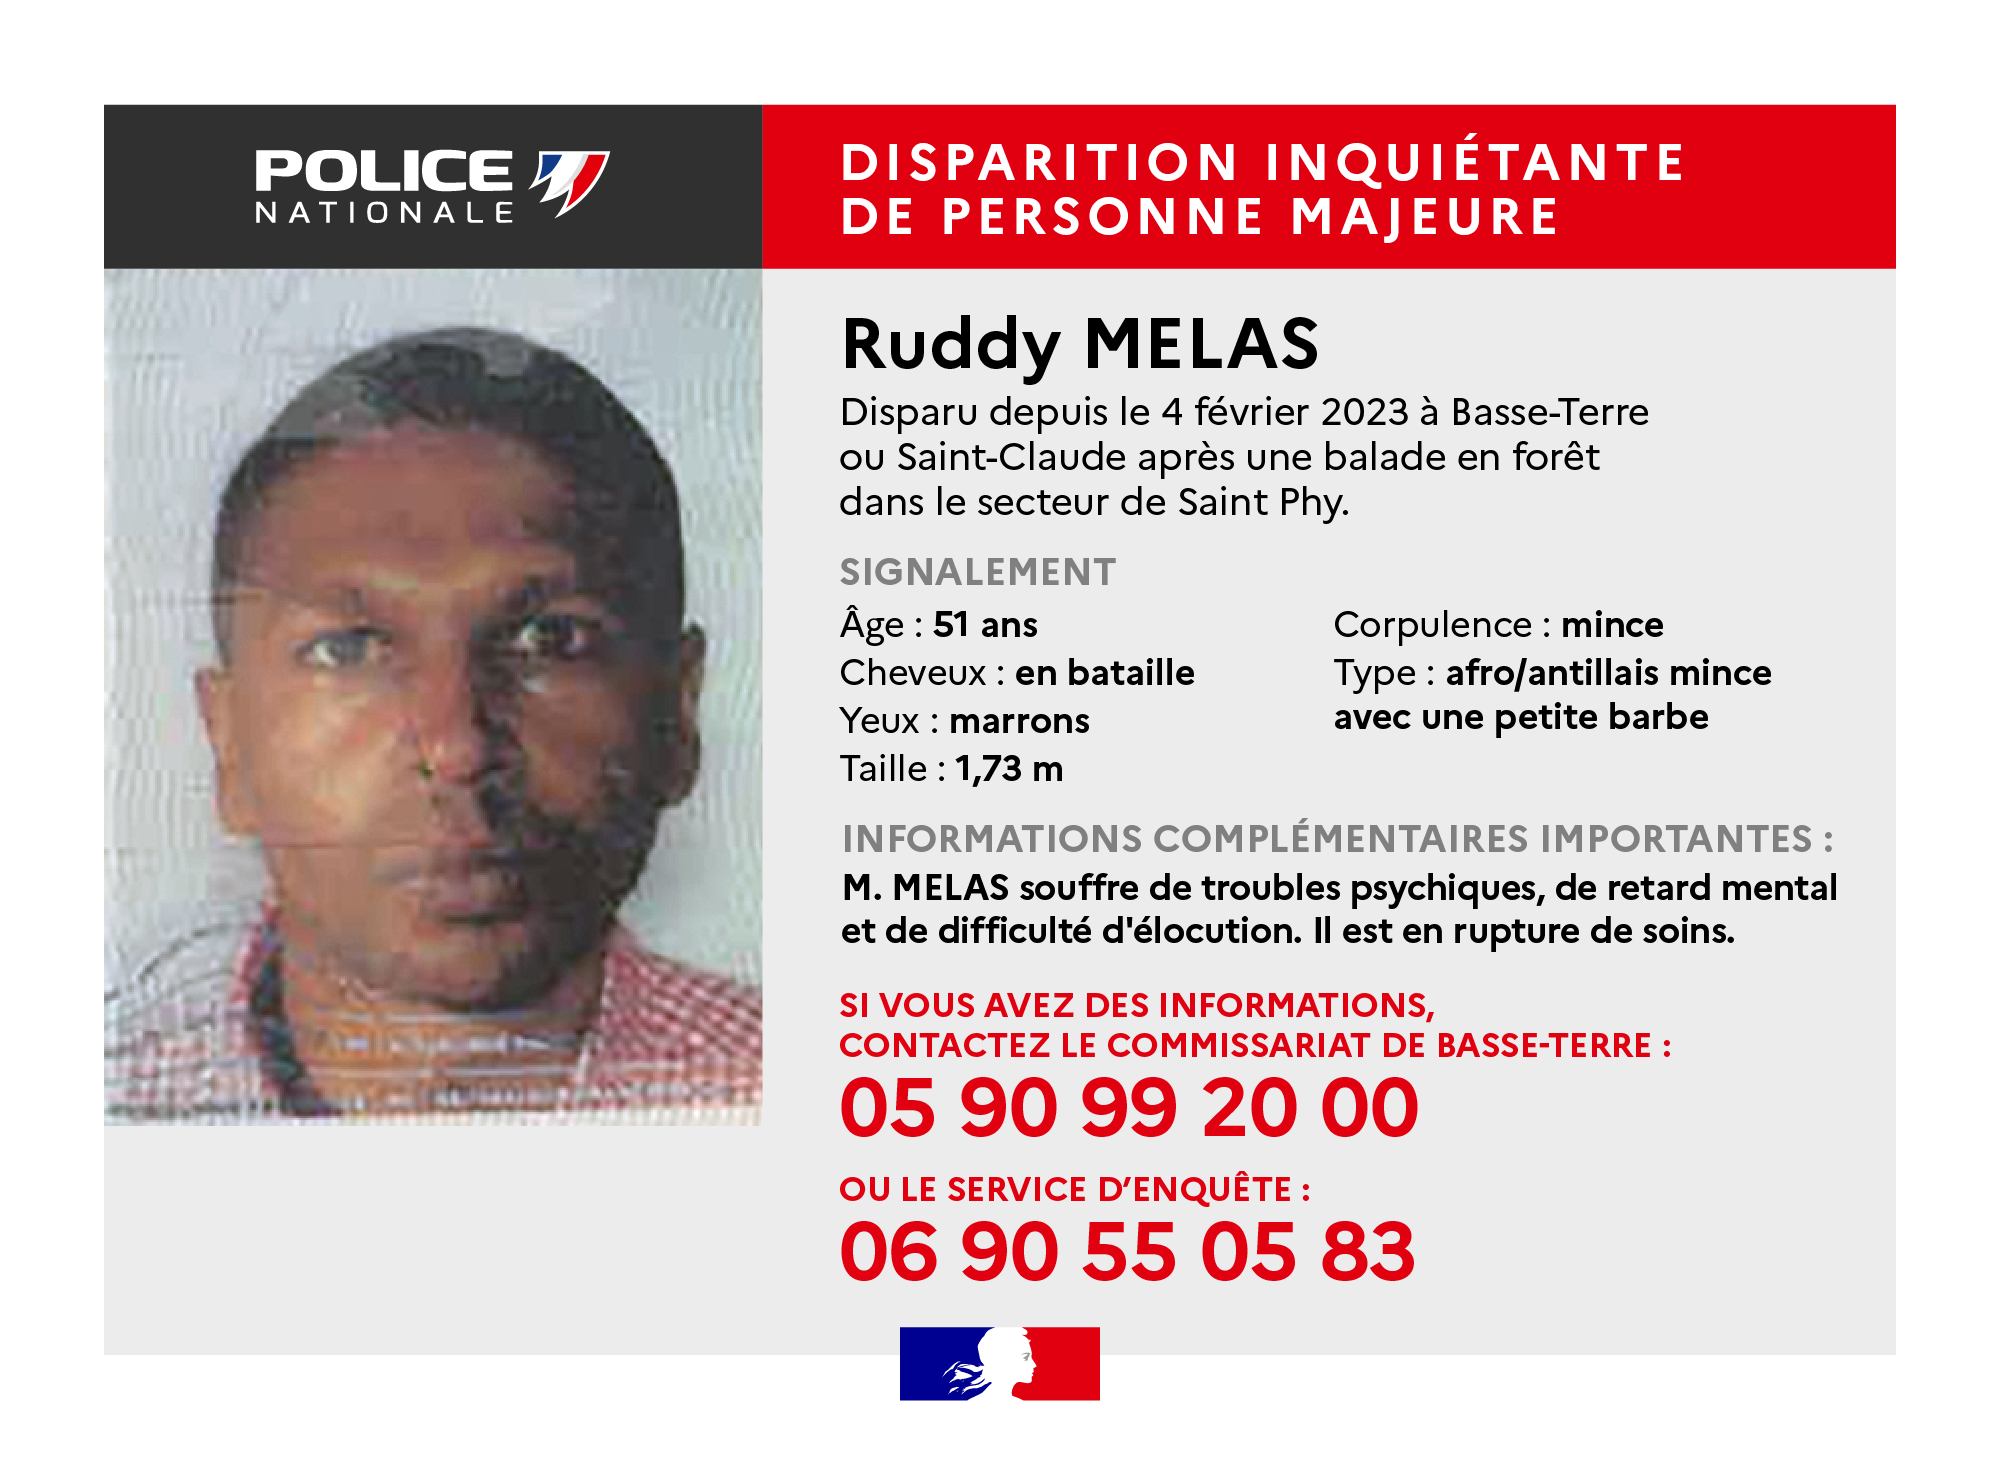     Disparition inquiétante : avez-vous Ruddy Melas ?

